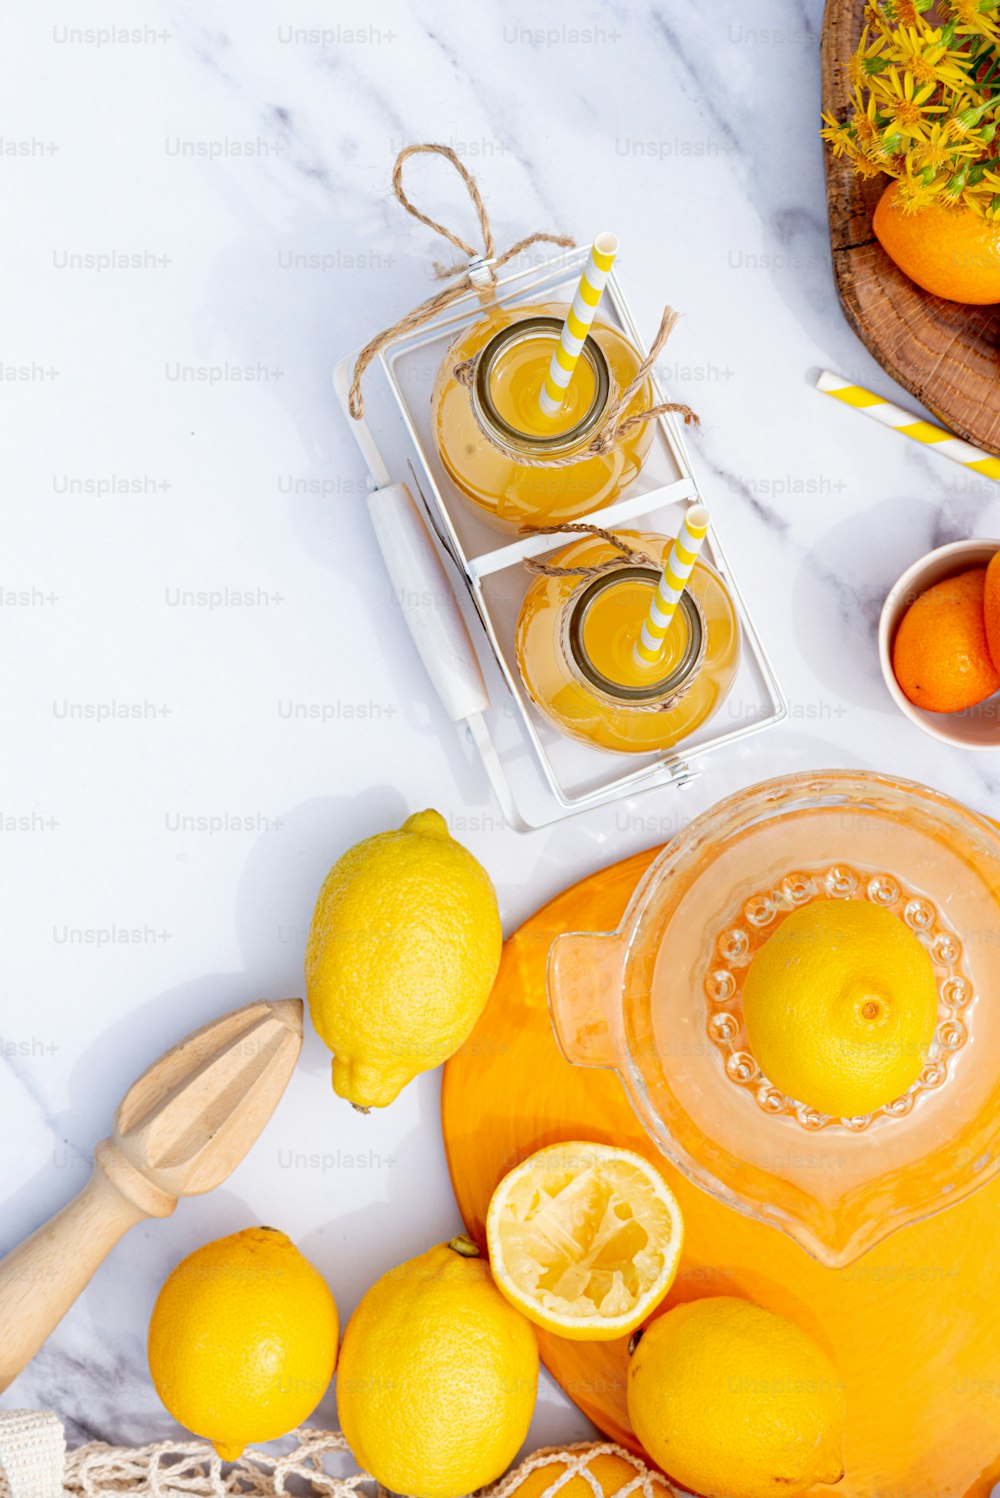 오렌지와 레몬을 얹은 대리석 테이블